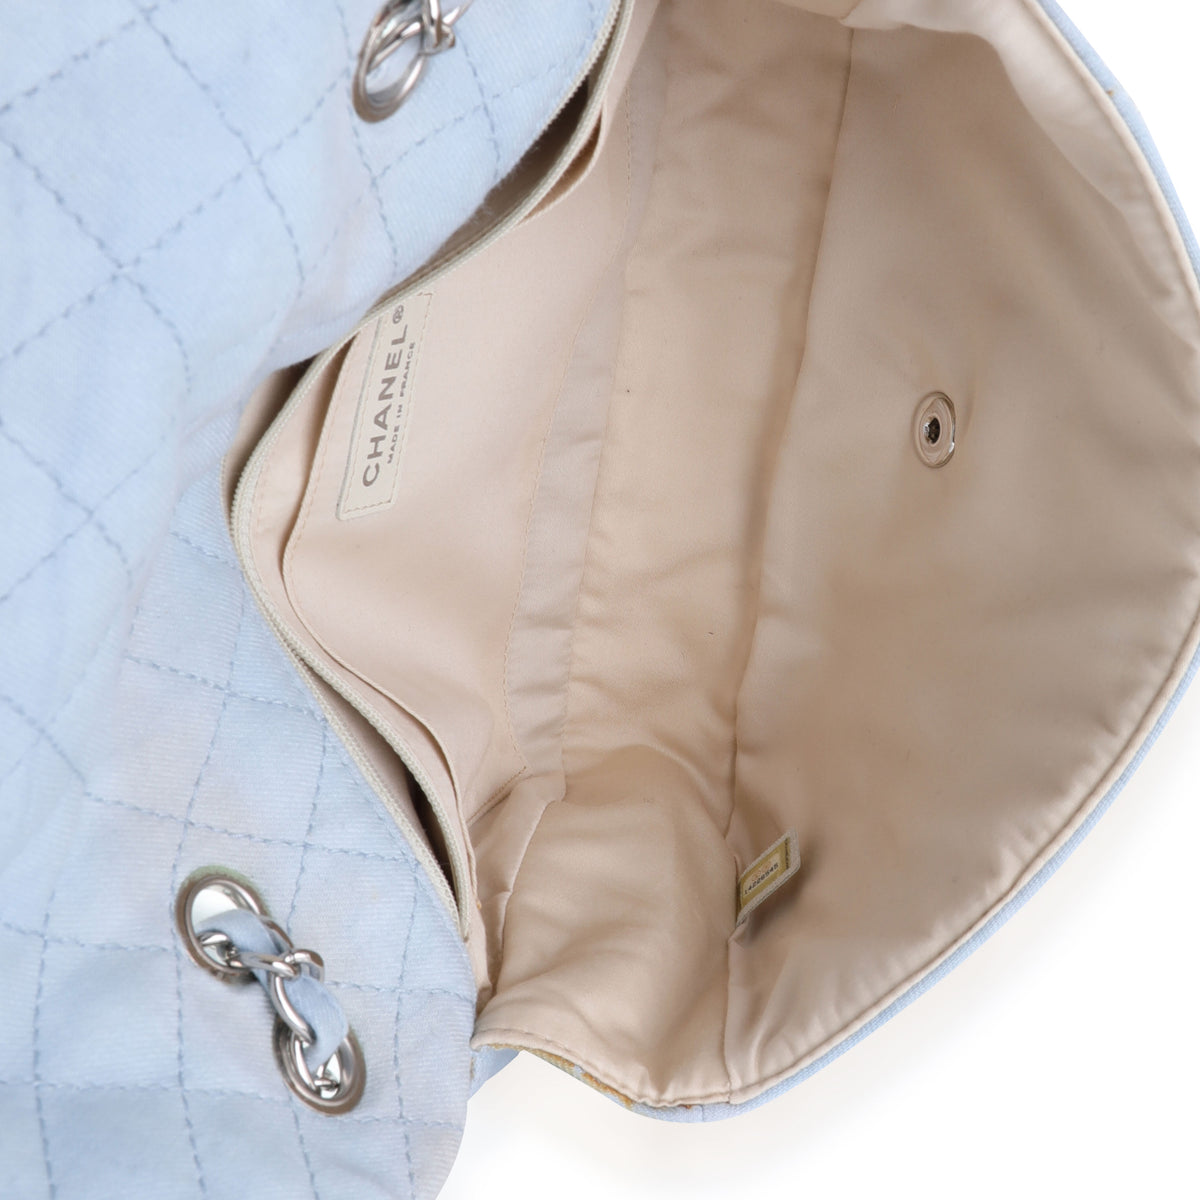 Chanel Light Blue Quilted Denim Swarovski Crystal Single Flap Bag